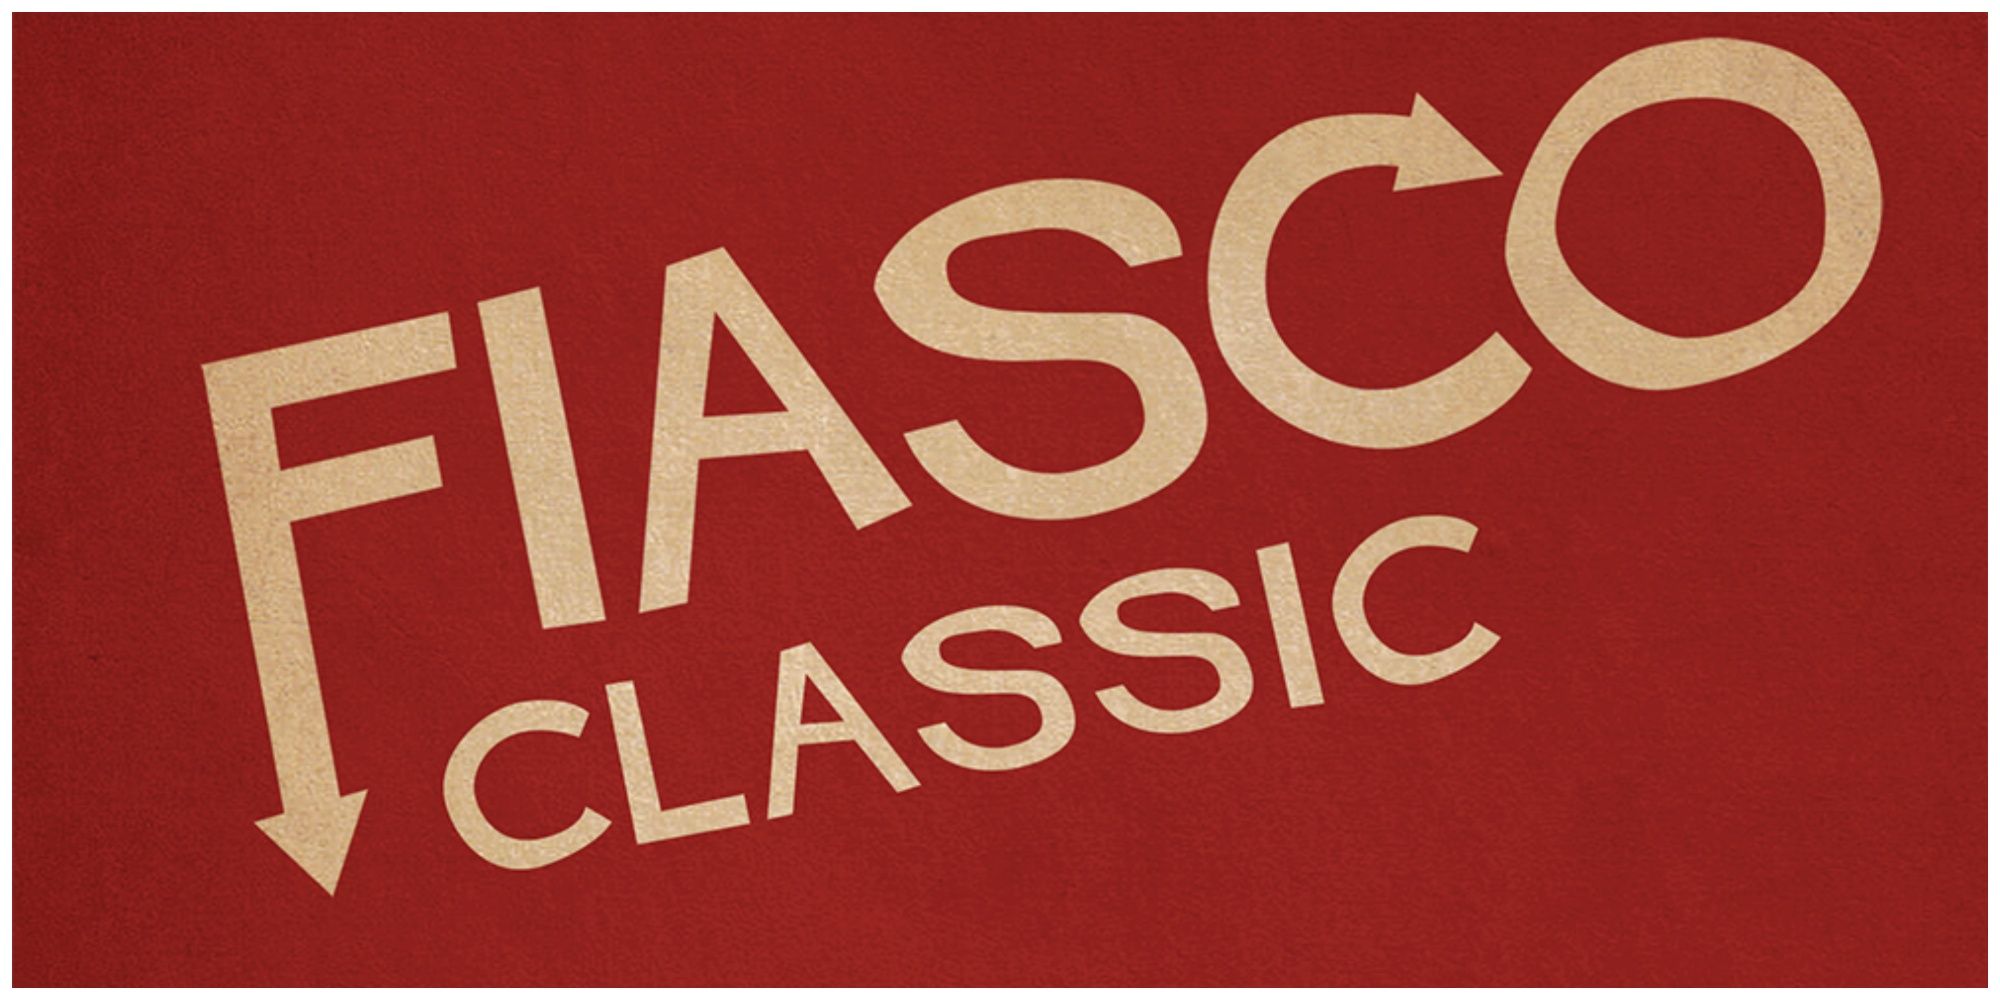 Fiasco (Classic) title